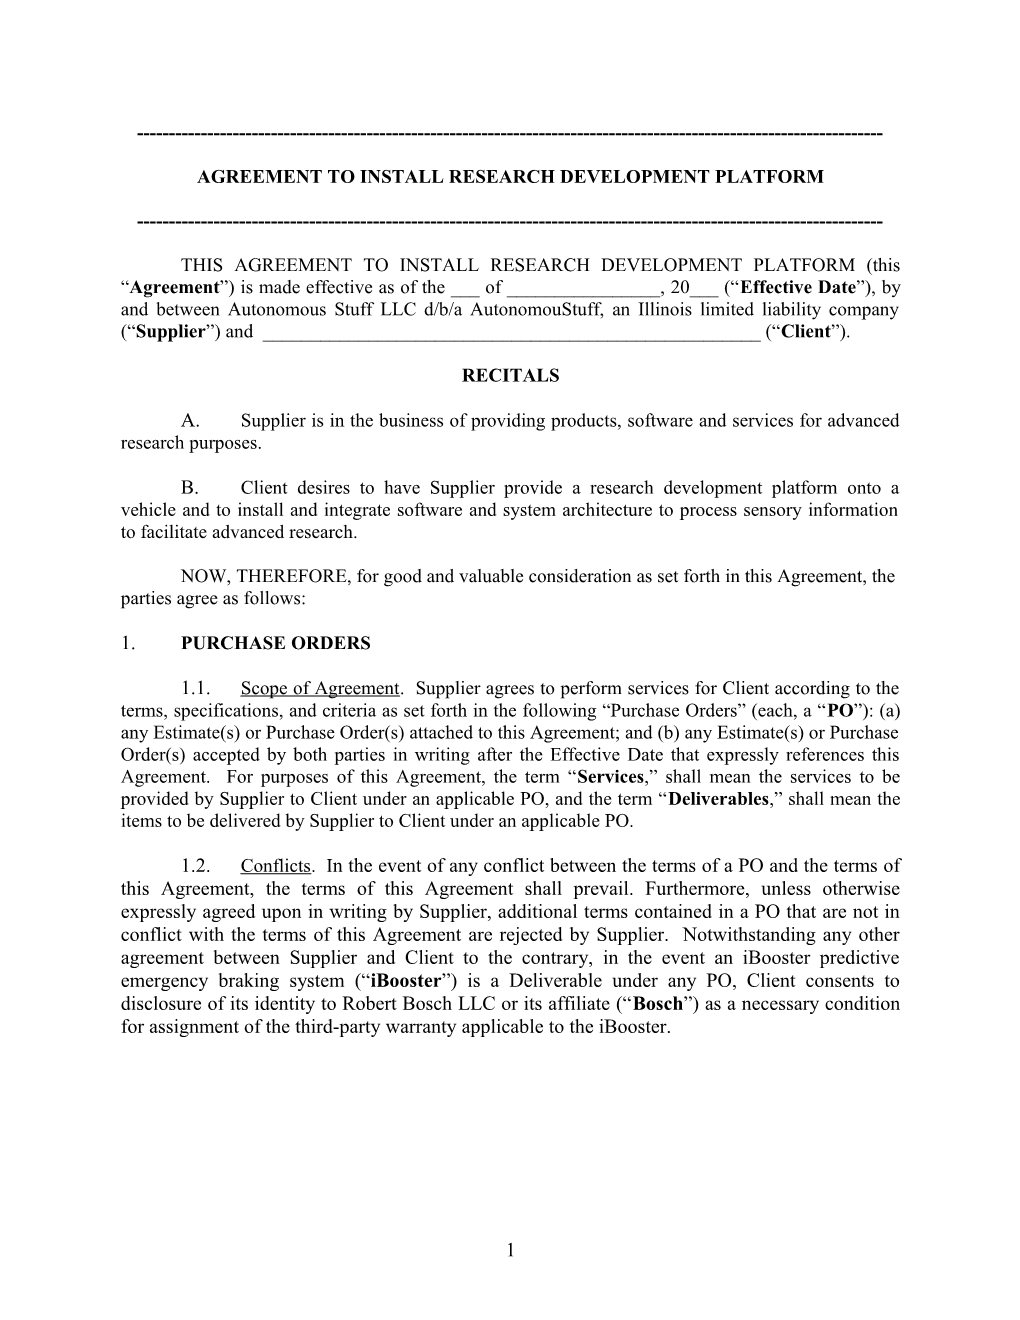 Model GEM Platform Agreement (Rev. 1.9.18) (00189724-3)